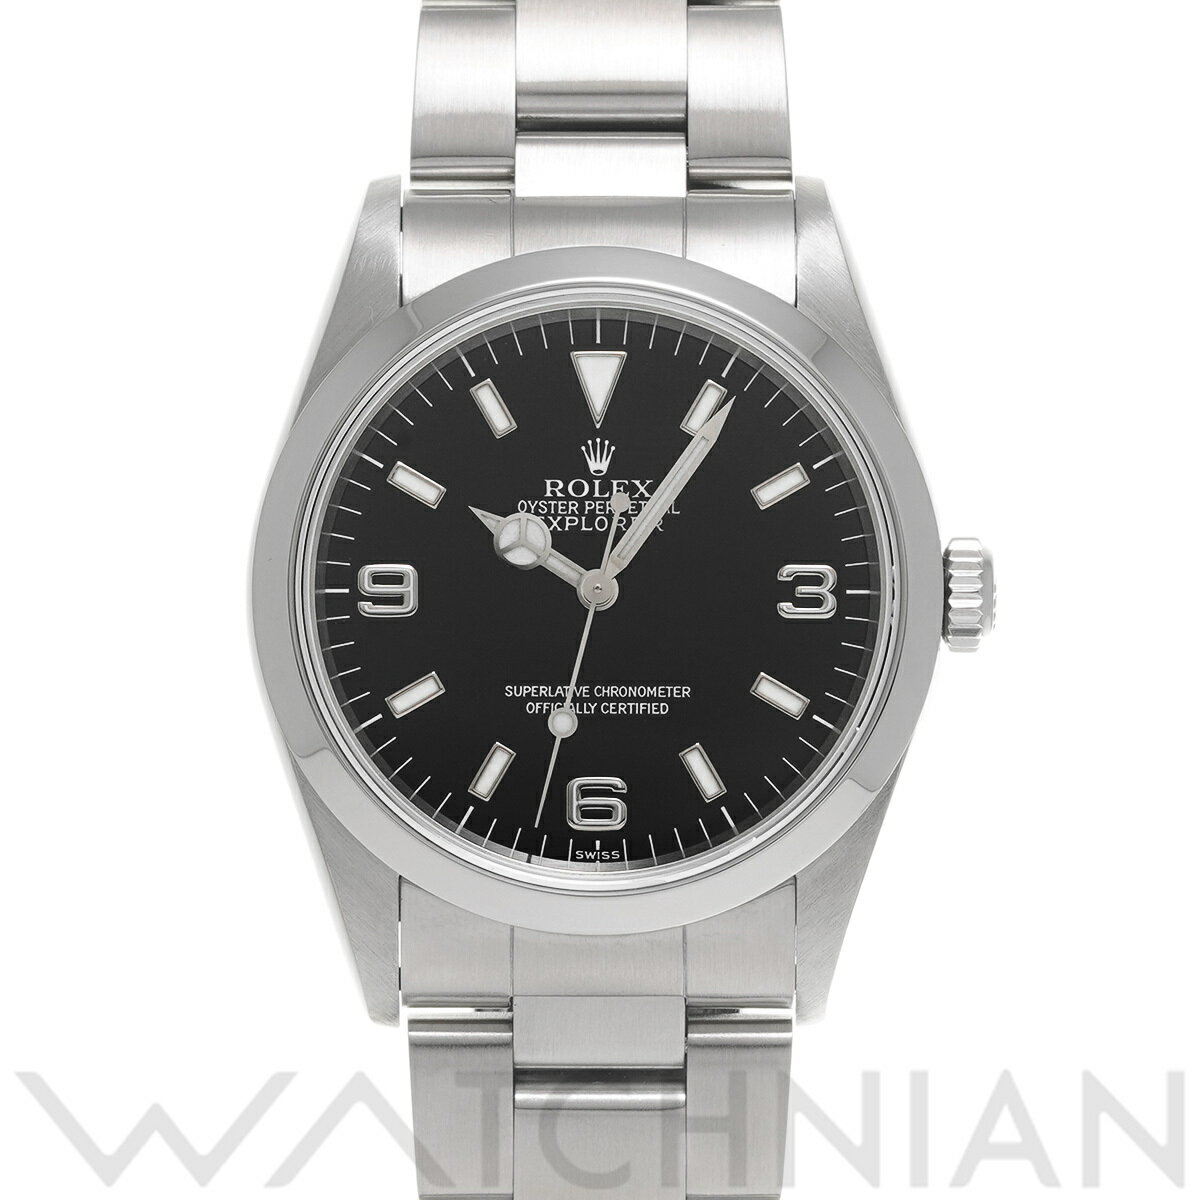 【4種選べるクーポン】【ローン60回払い無金利】【中古】 ロレックス ROLEX エクスプローラー 14270 U番(1997年頃製造) ブラック メンズ 腕時計 ロレックス 時計 高級腕時計 ブランド